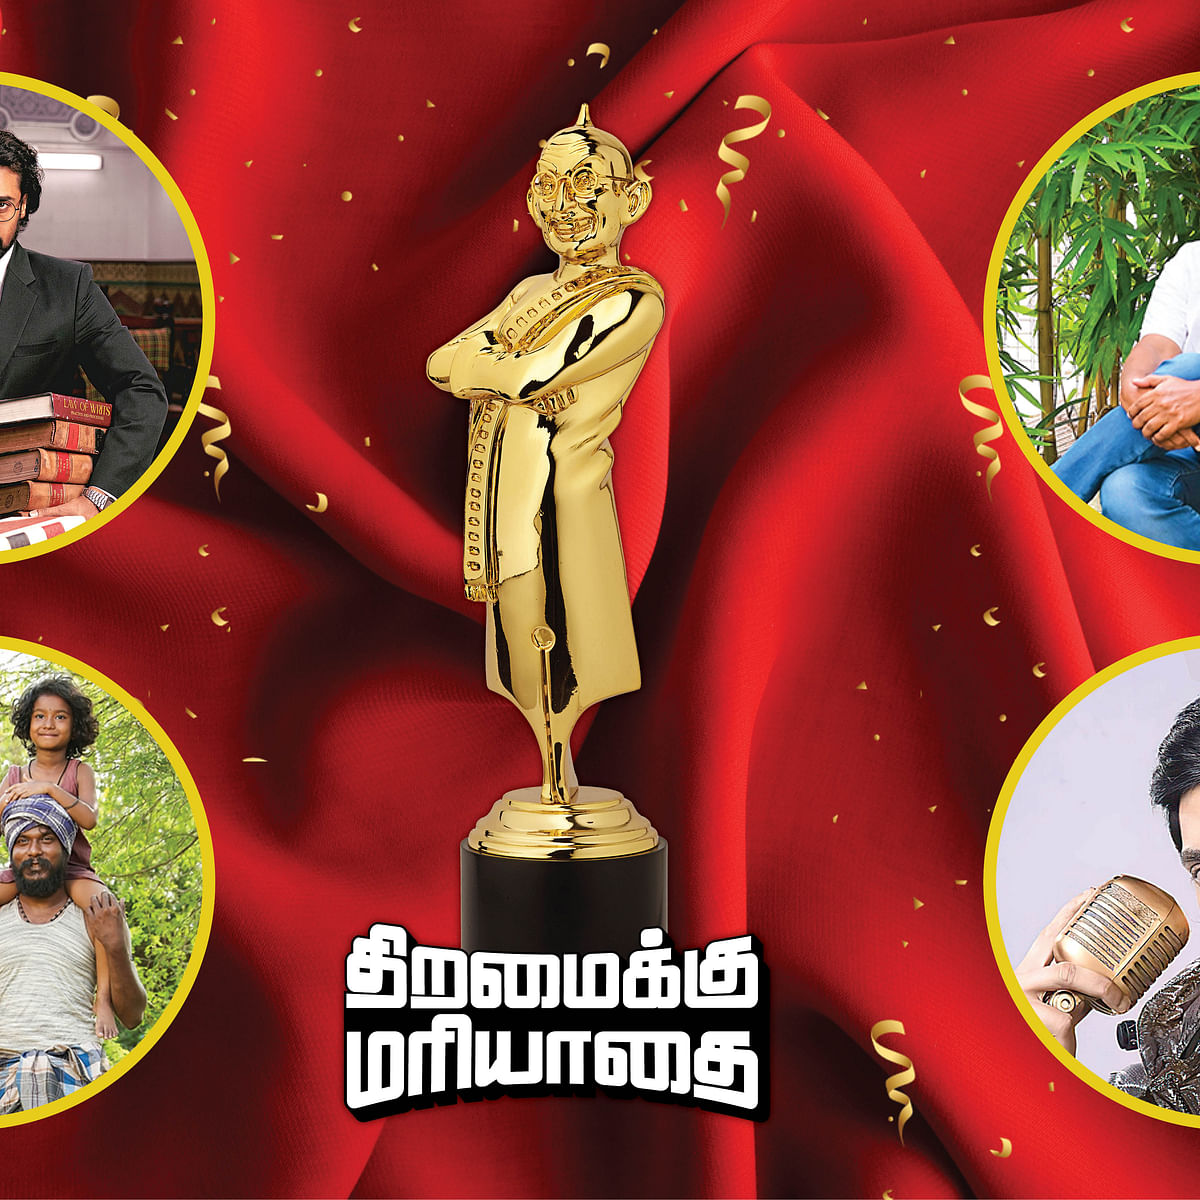 ஆனந்த விகடன் சினிமா விருதுகள் 2020-2021